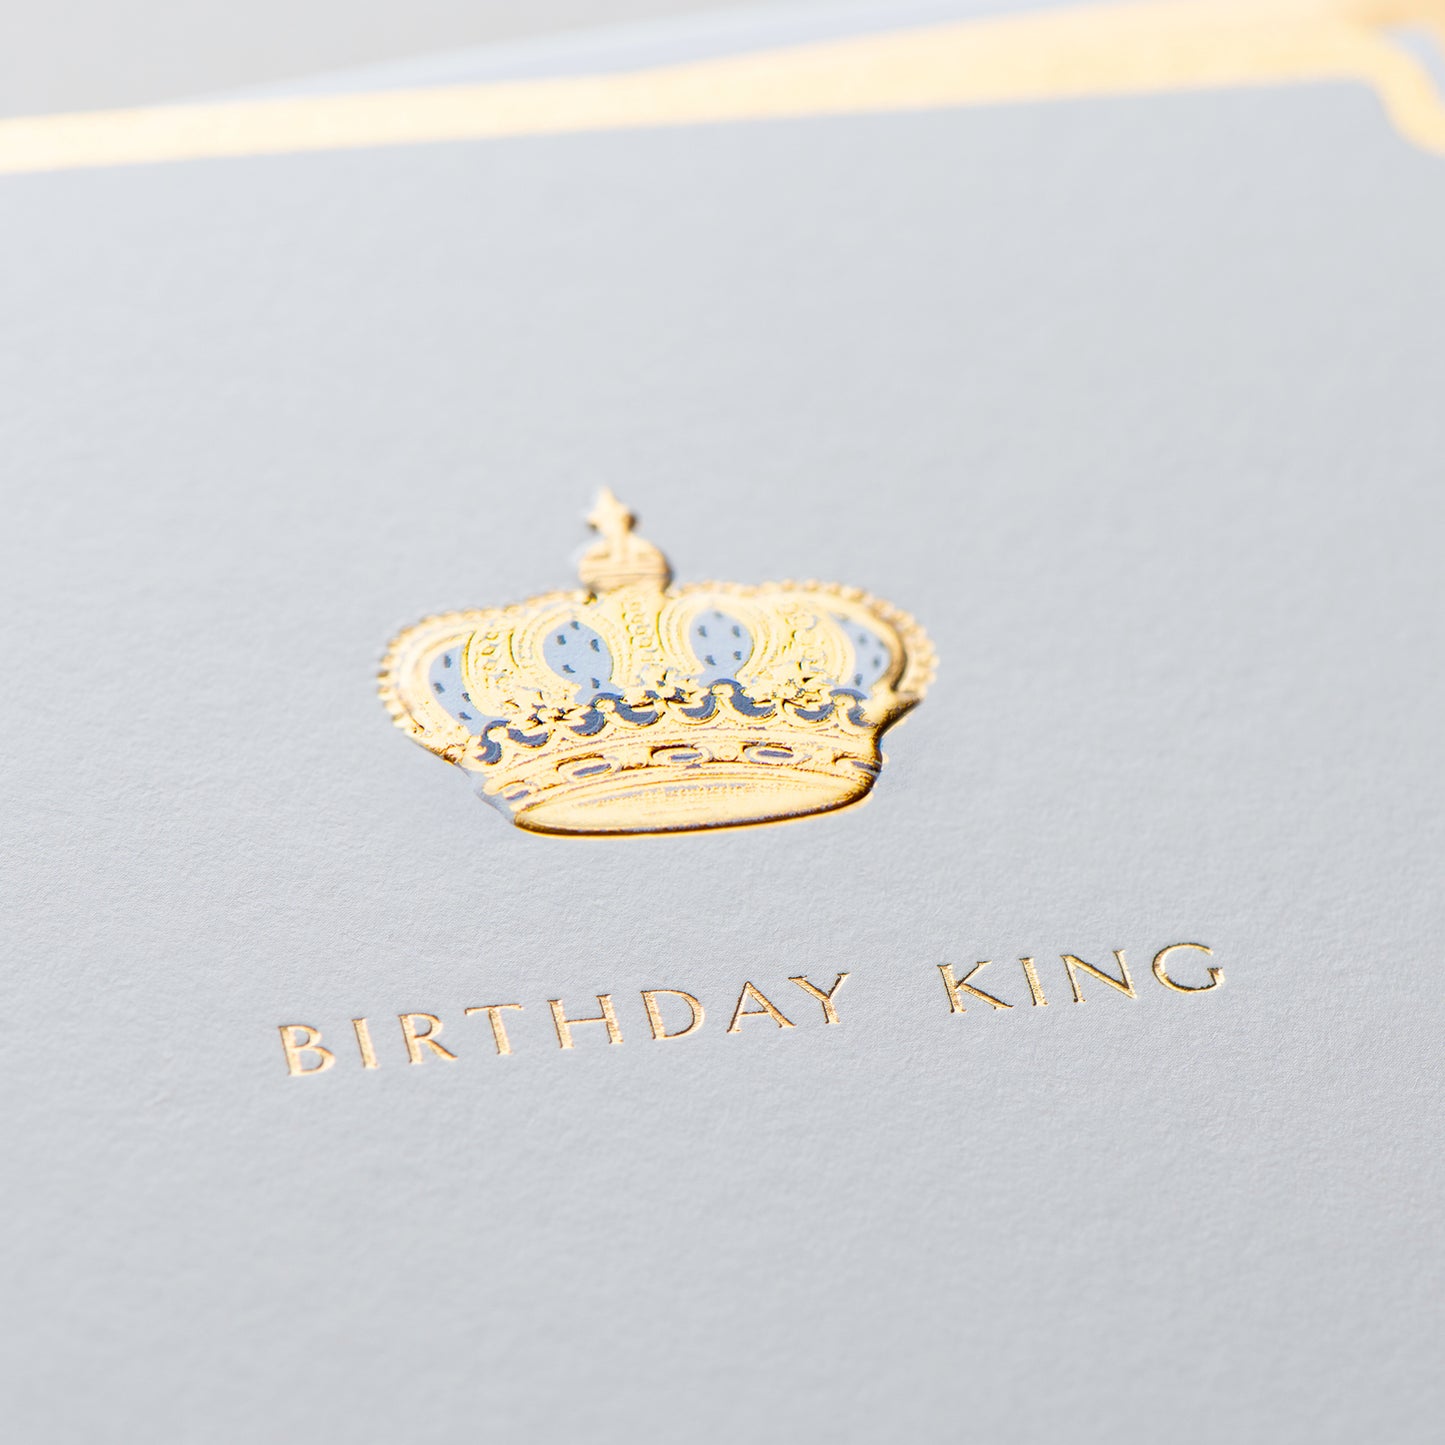 Birthday King Card